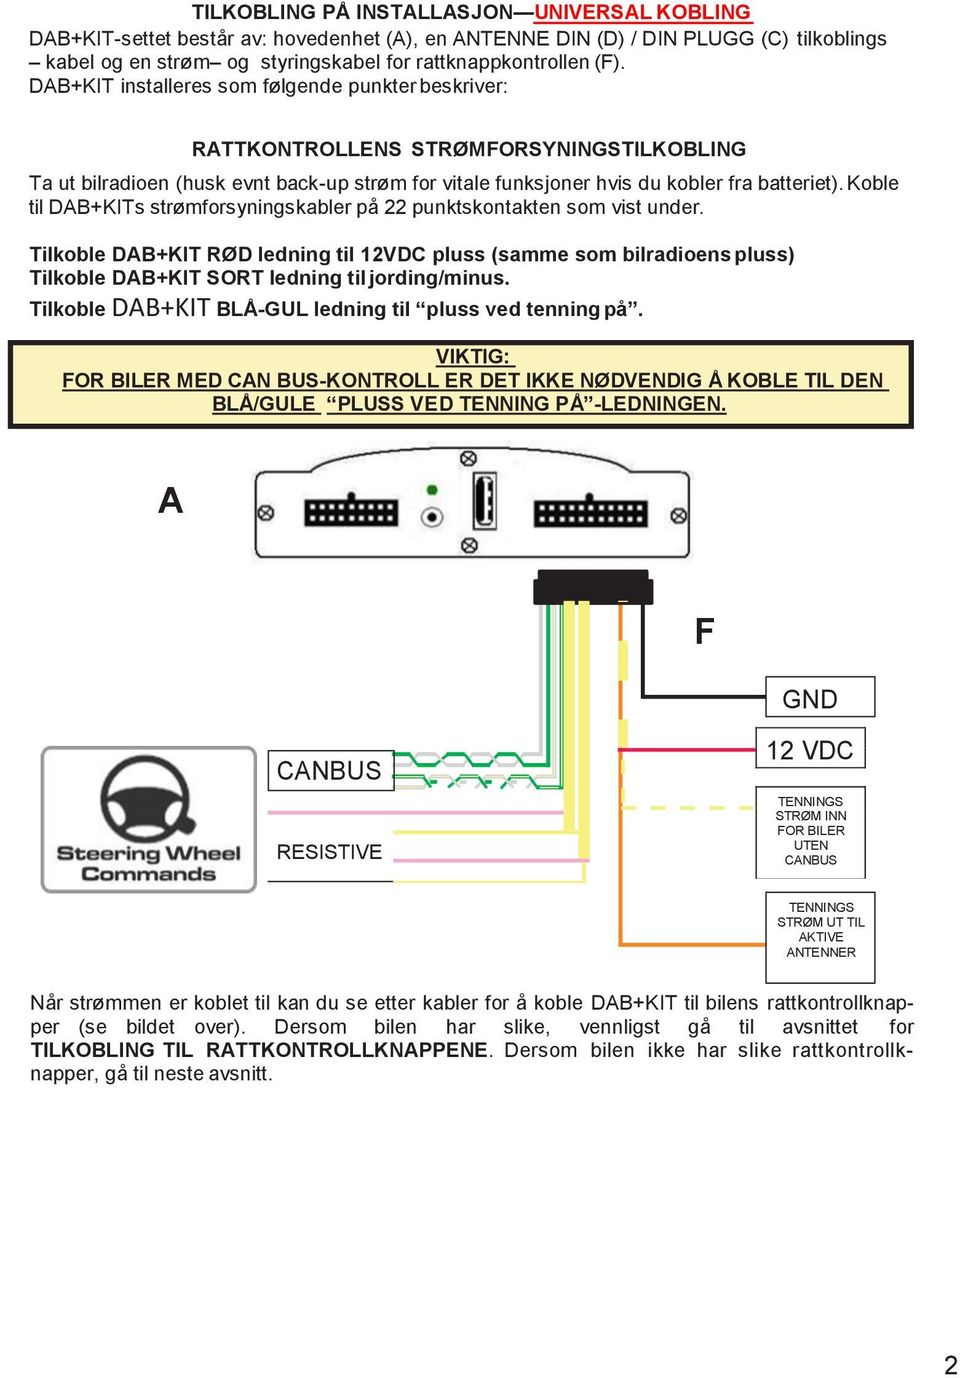 Koble til DAB+KITs strømforsyningskabler på 22 punktskontakten som vist under.